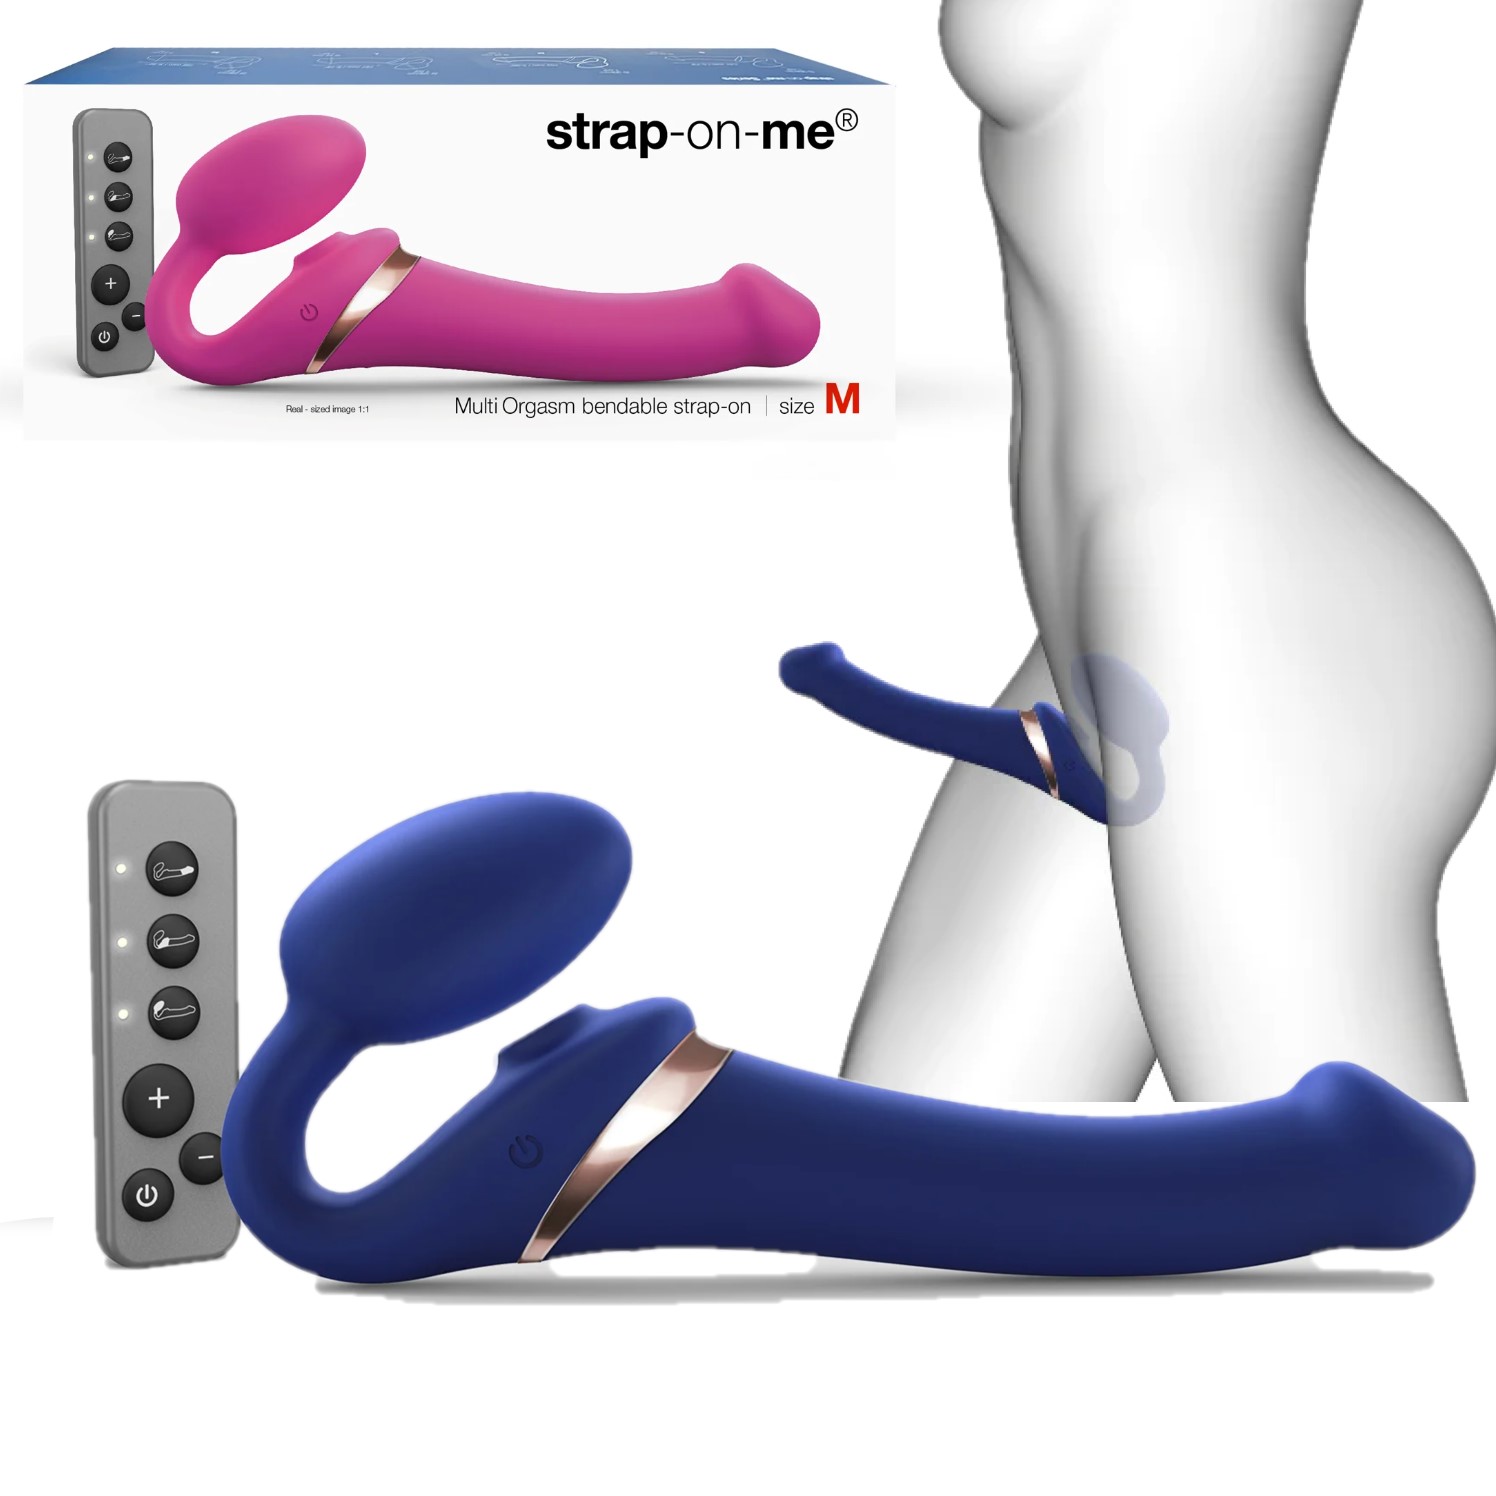 Soulignant l’héritage de Strap-on-me avec son design iconique, le Multi Orgasm Bendable Strap-On allie élégance et modernité.